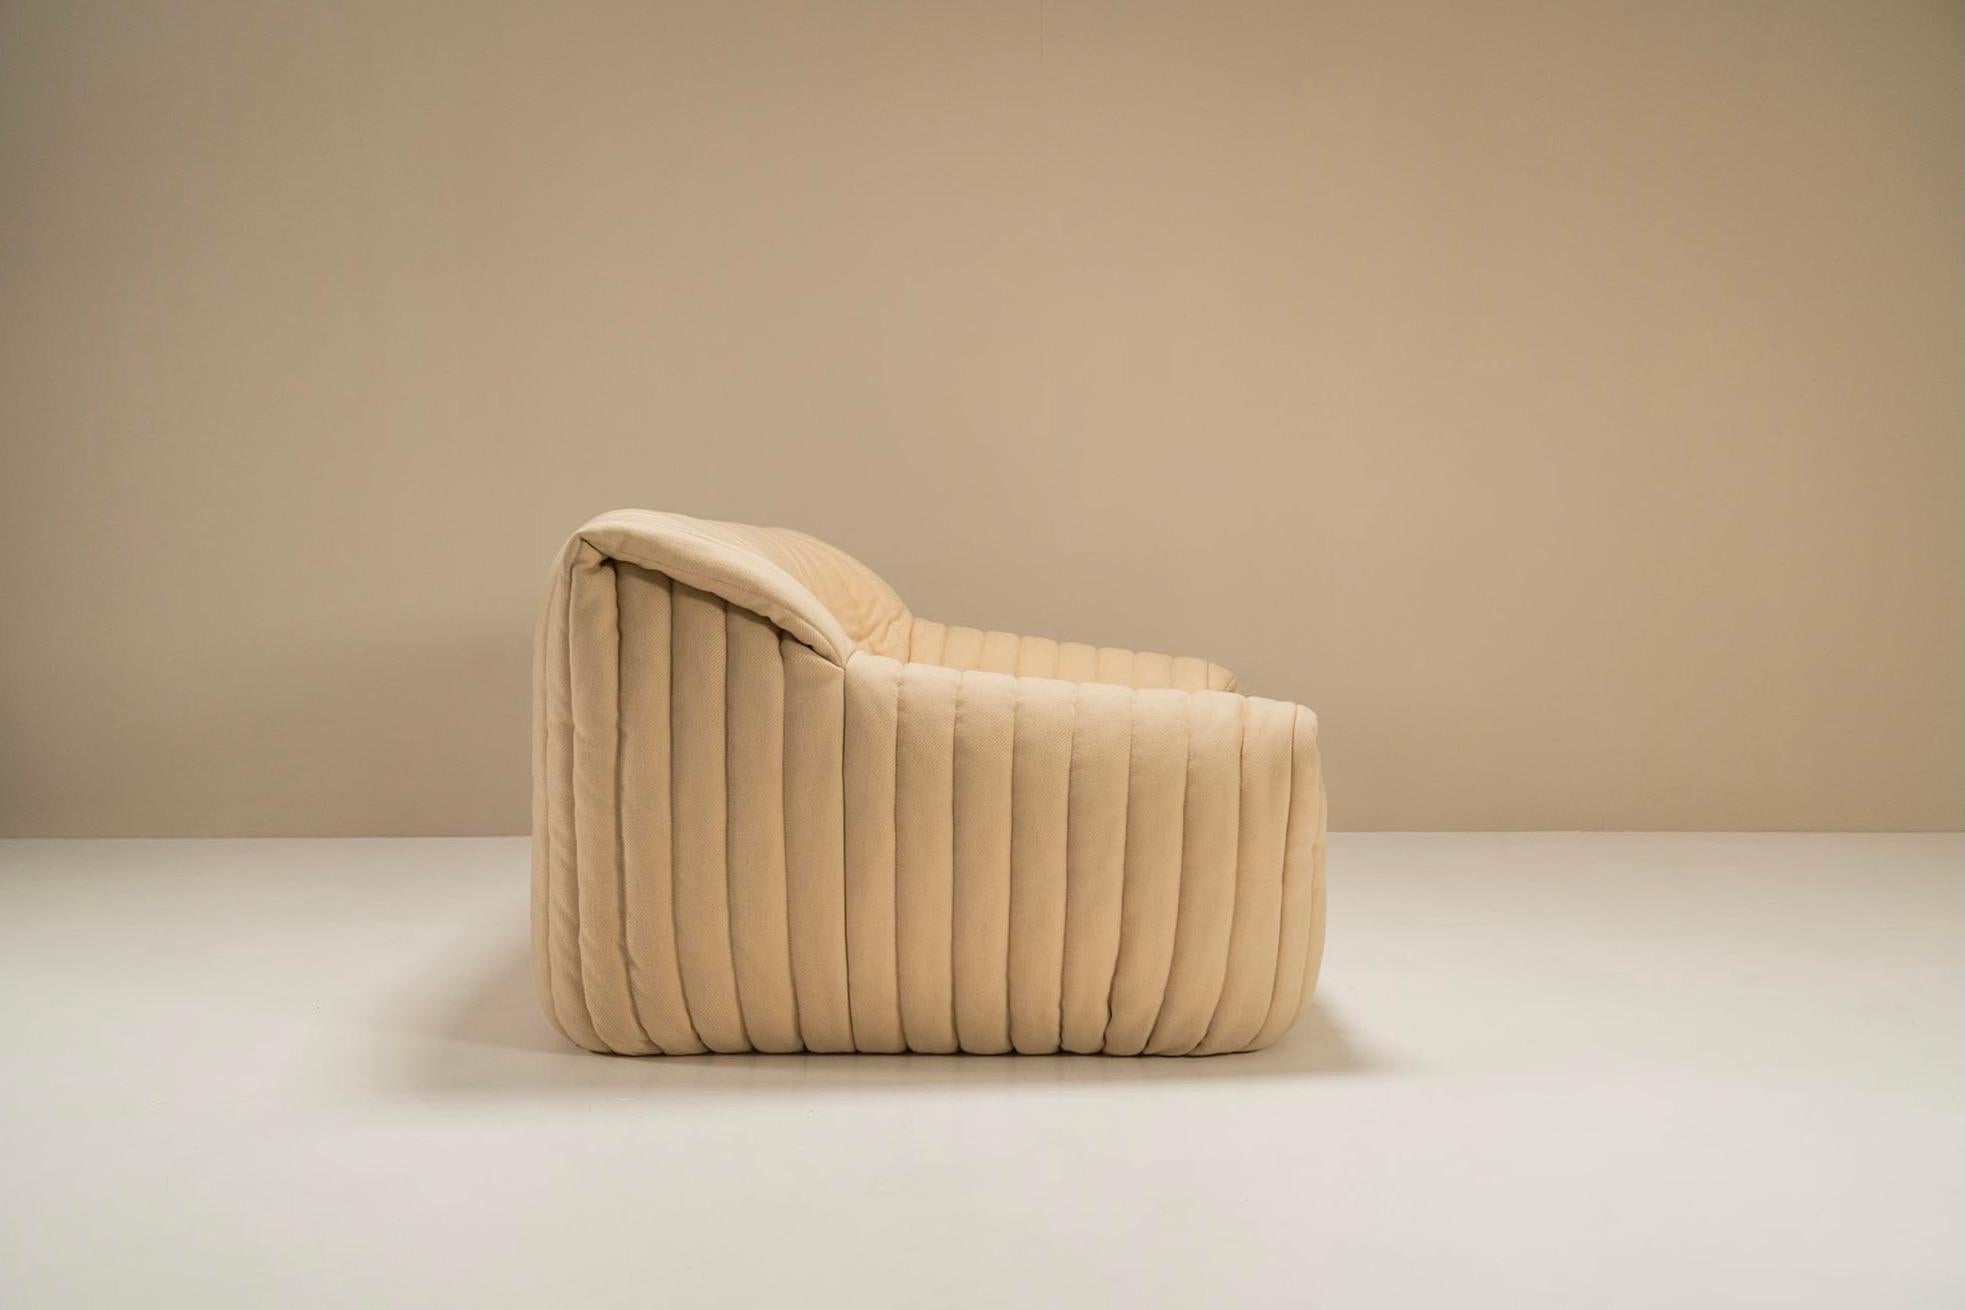 Zweisitzer-Sofa, Modell Sandra, von Annie Hieronimus für Cinna, Frankreich, 1976 (Ende des 20. Jahrhunderts)